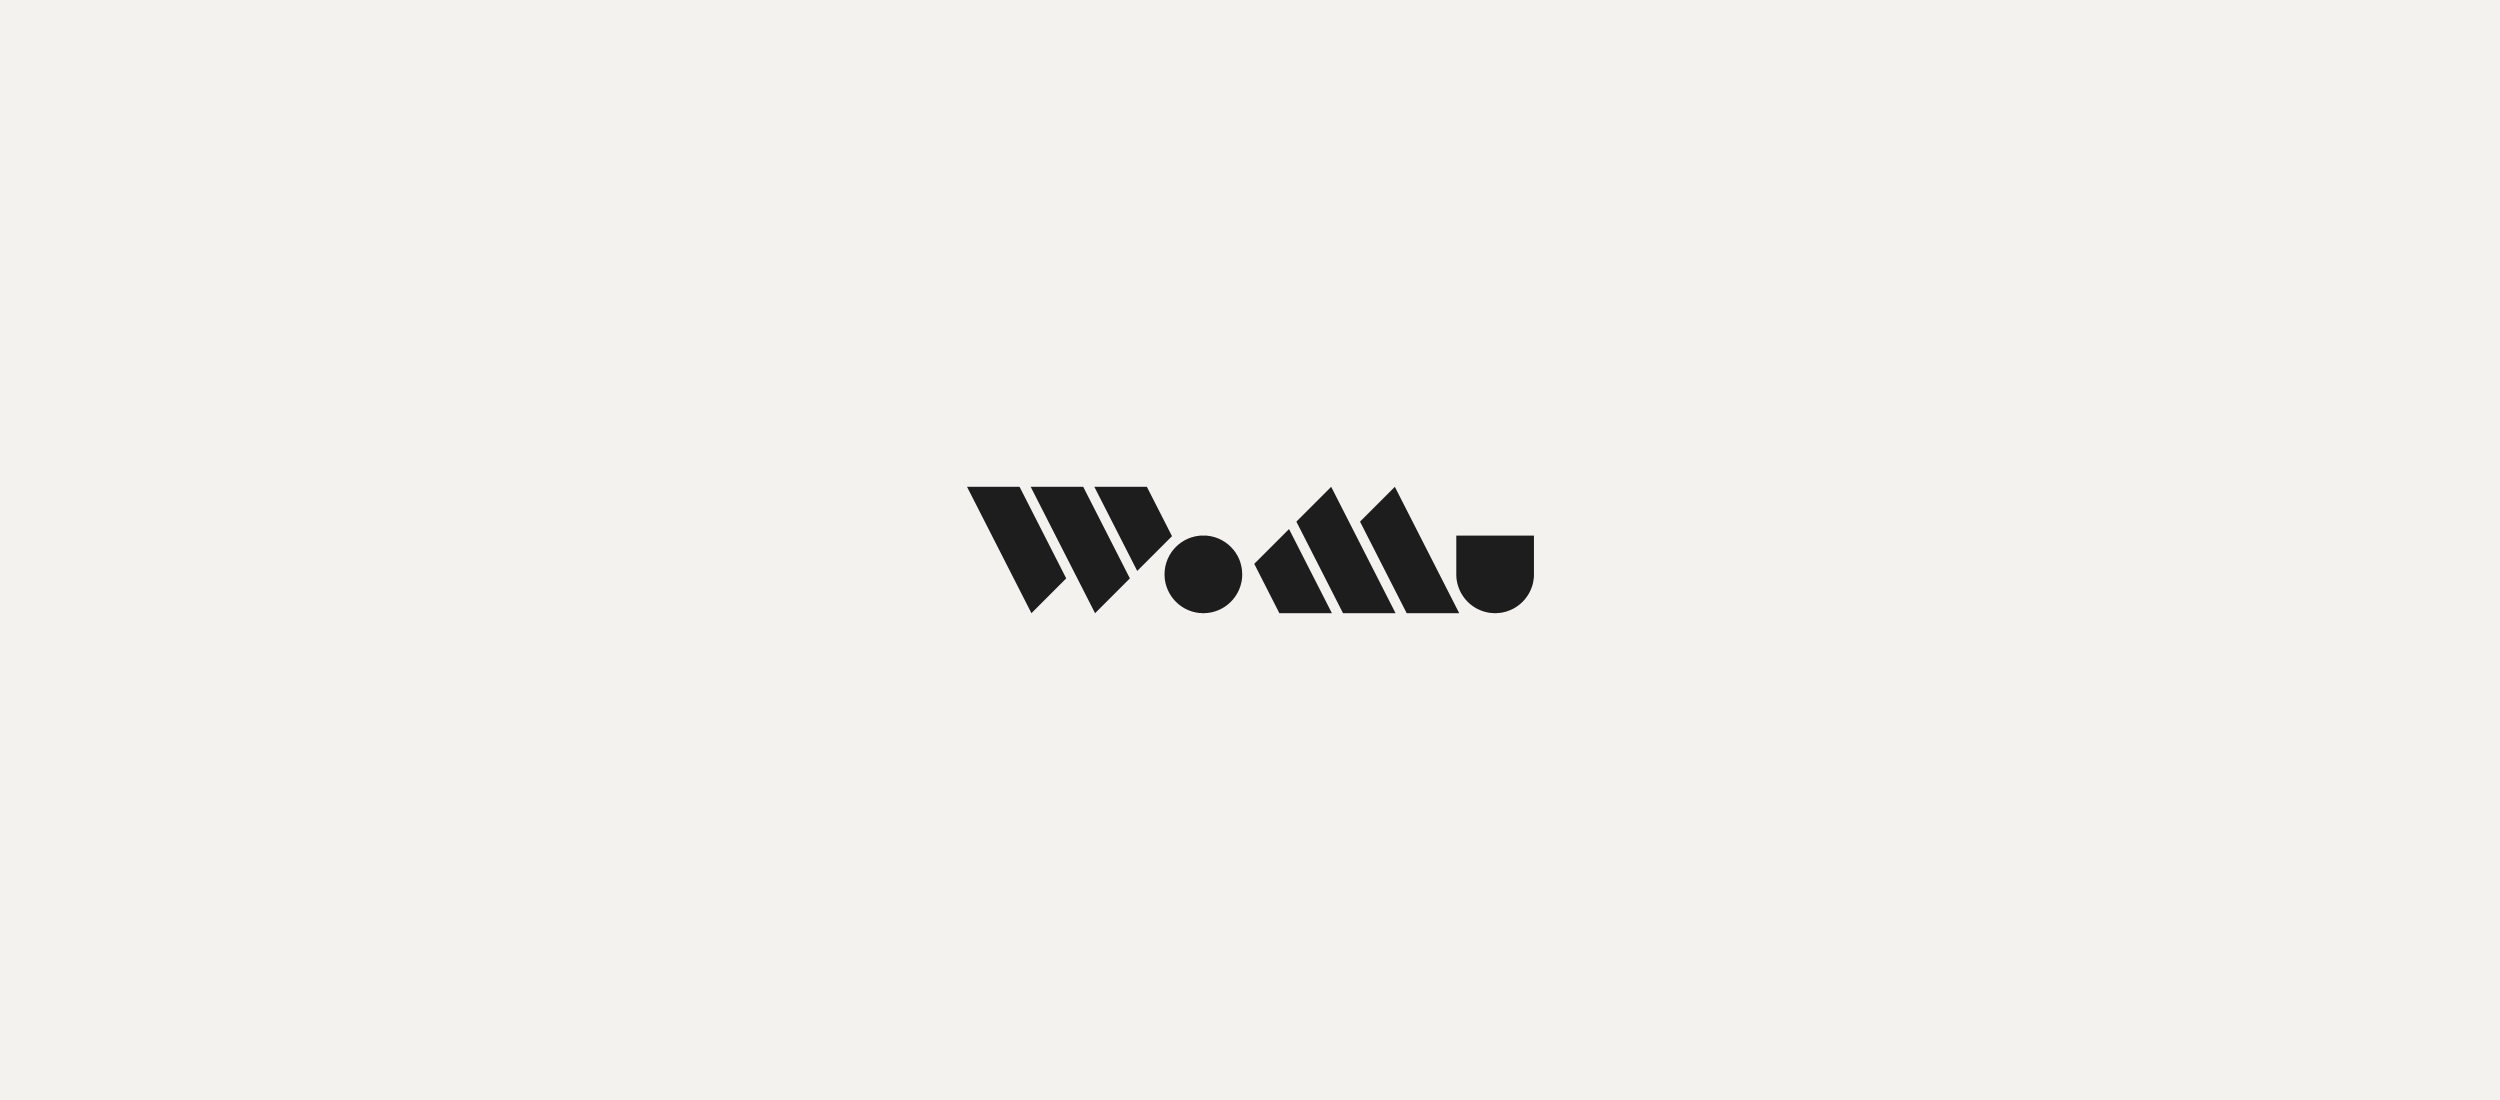 WoMu logo design.